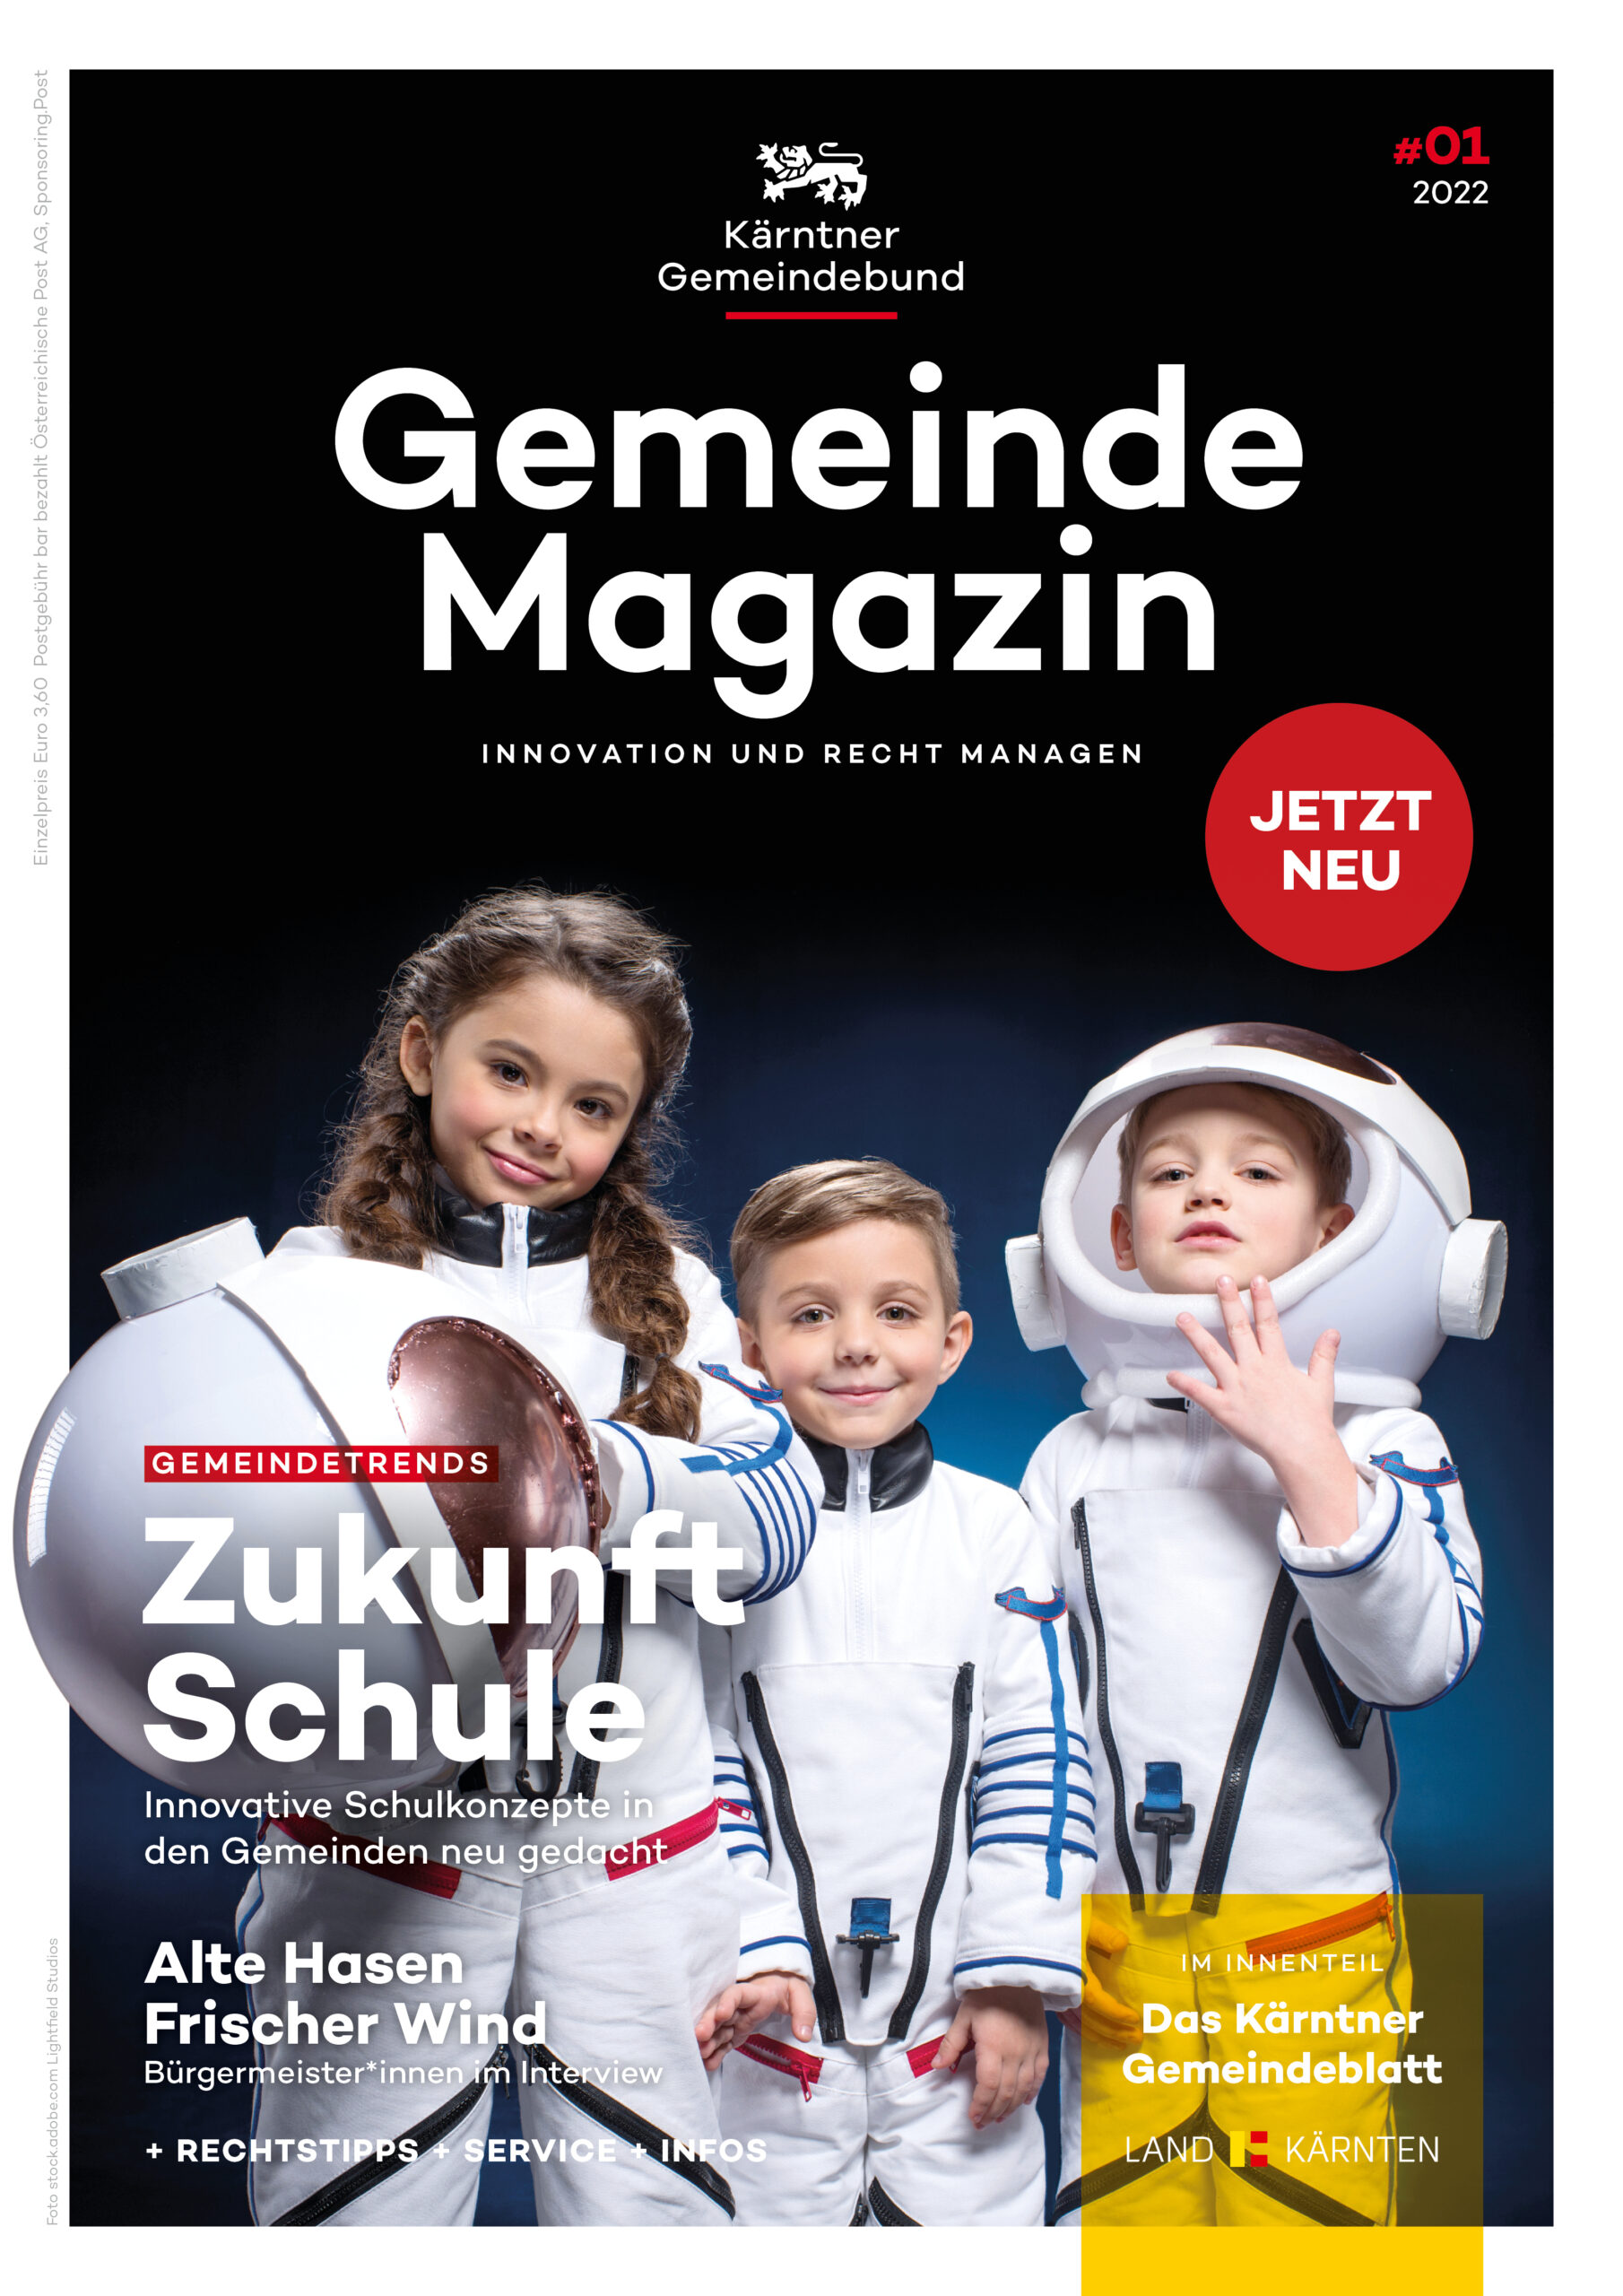 Kärntner Gemeindebund Gemeindemagazin Ausgabe 01 von 2022 zum Thema Zukunft Schule